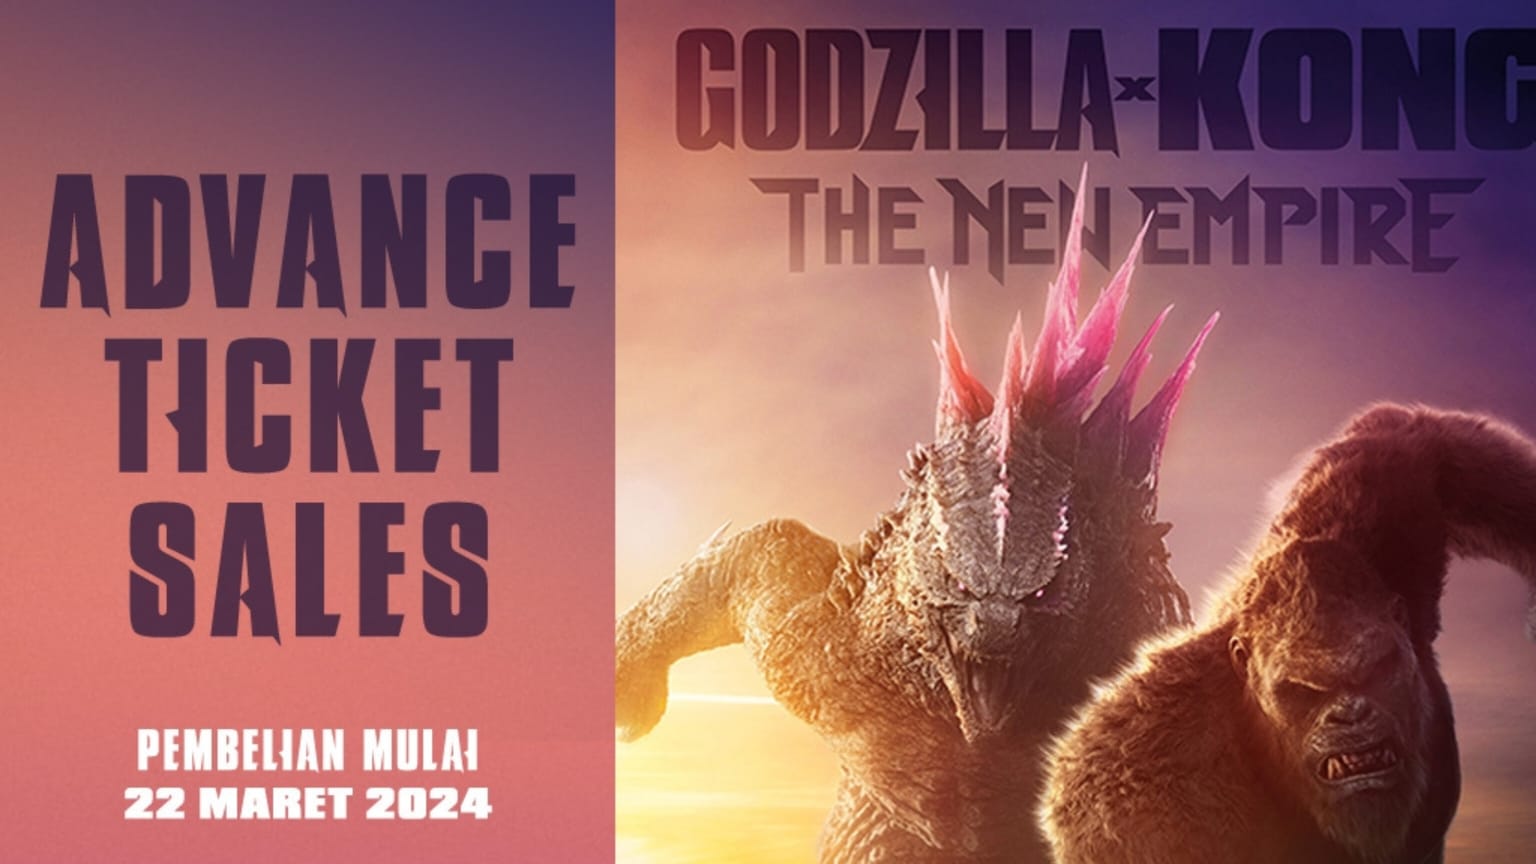 Sinopsis Lengkap Godzilla x Kong: The New Empire. Hadirkan Cerita Menegangkan, Hadapi Ancaman Baru